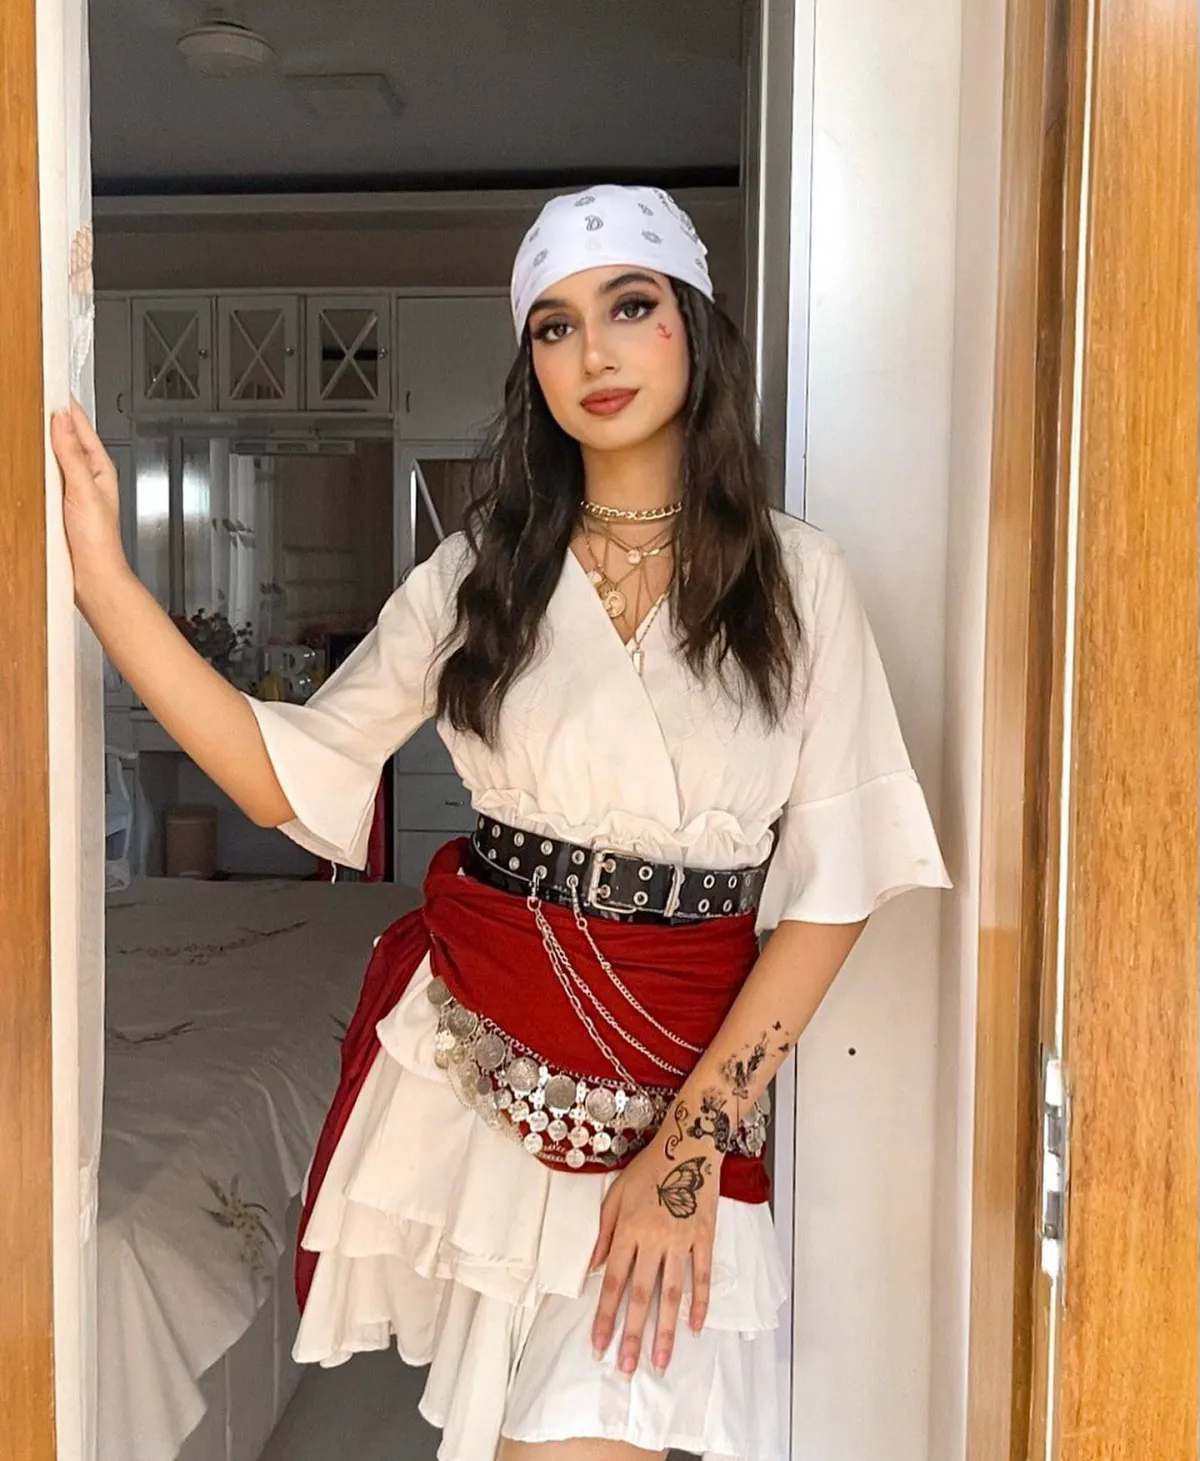 fasching kostüm für frau pirat mit kopftuch